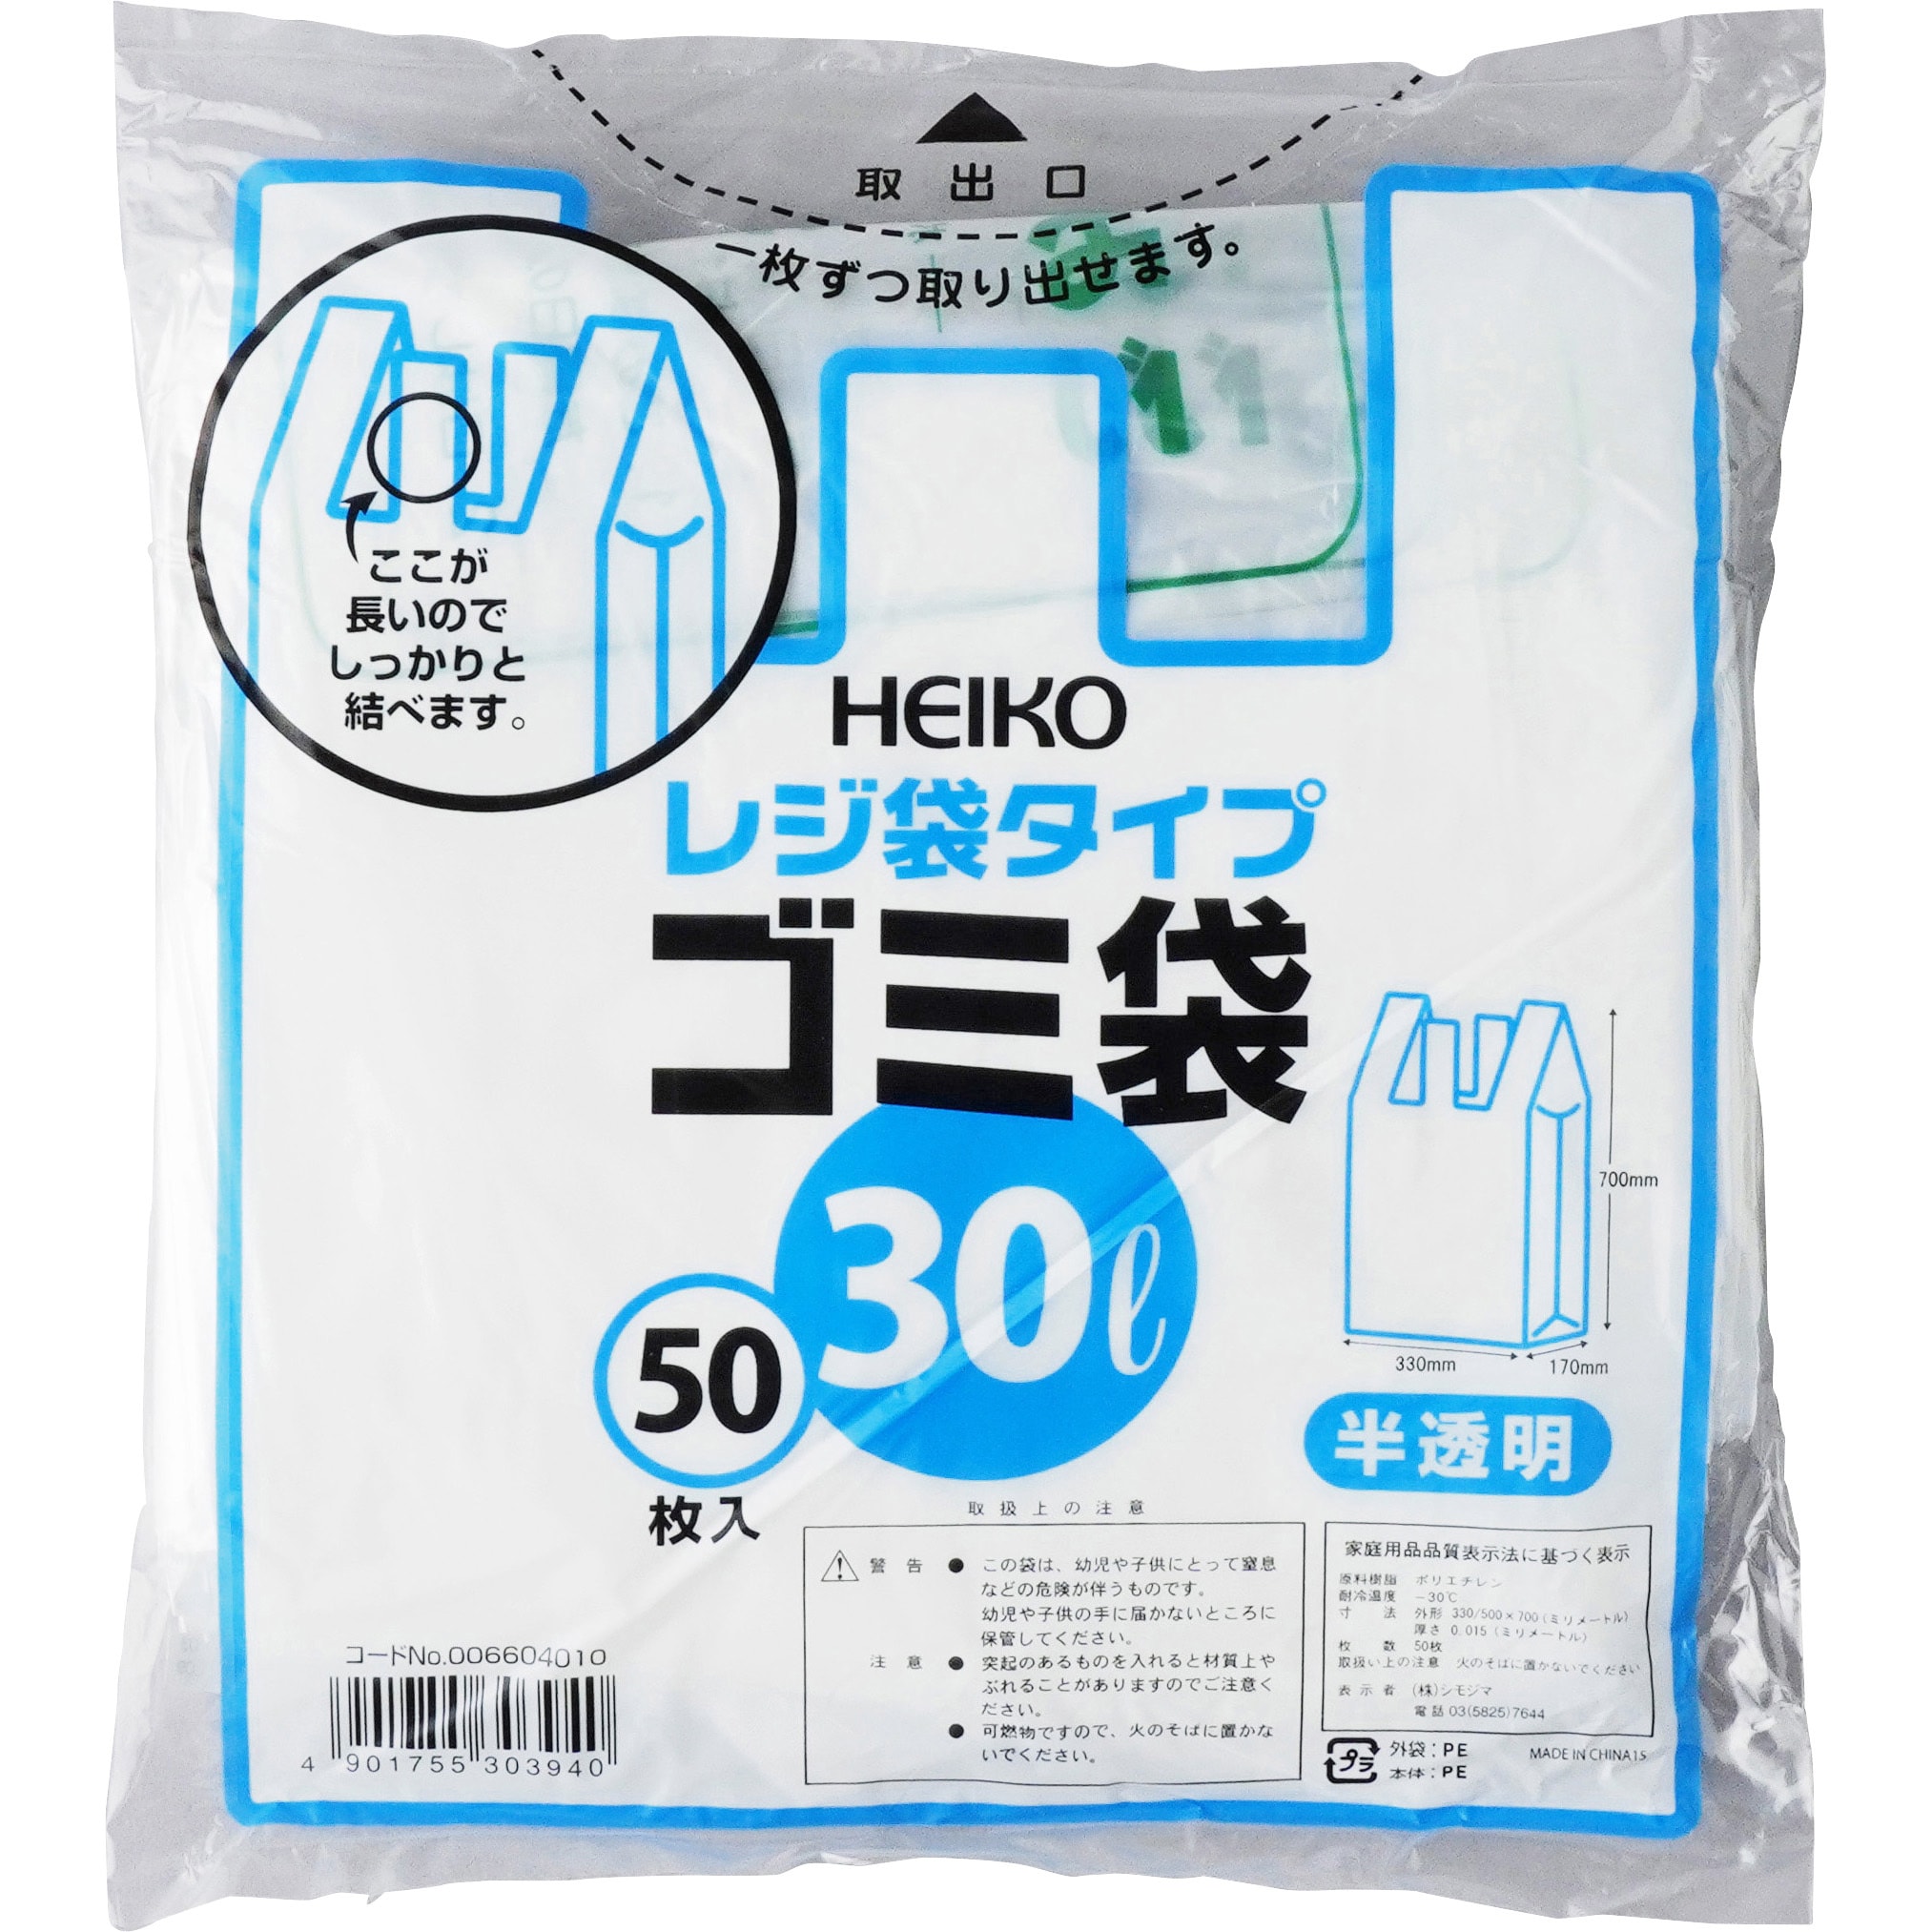 シモジマ HEIKOハイパワー半透明ゴミ袋 #016(3層) 70L #0066050021